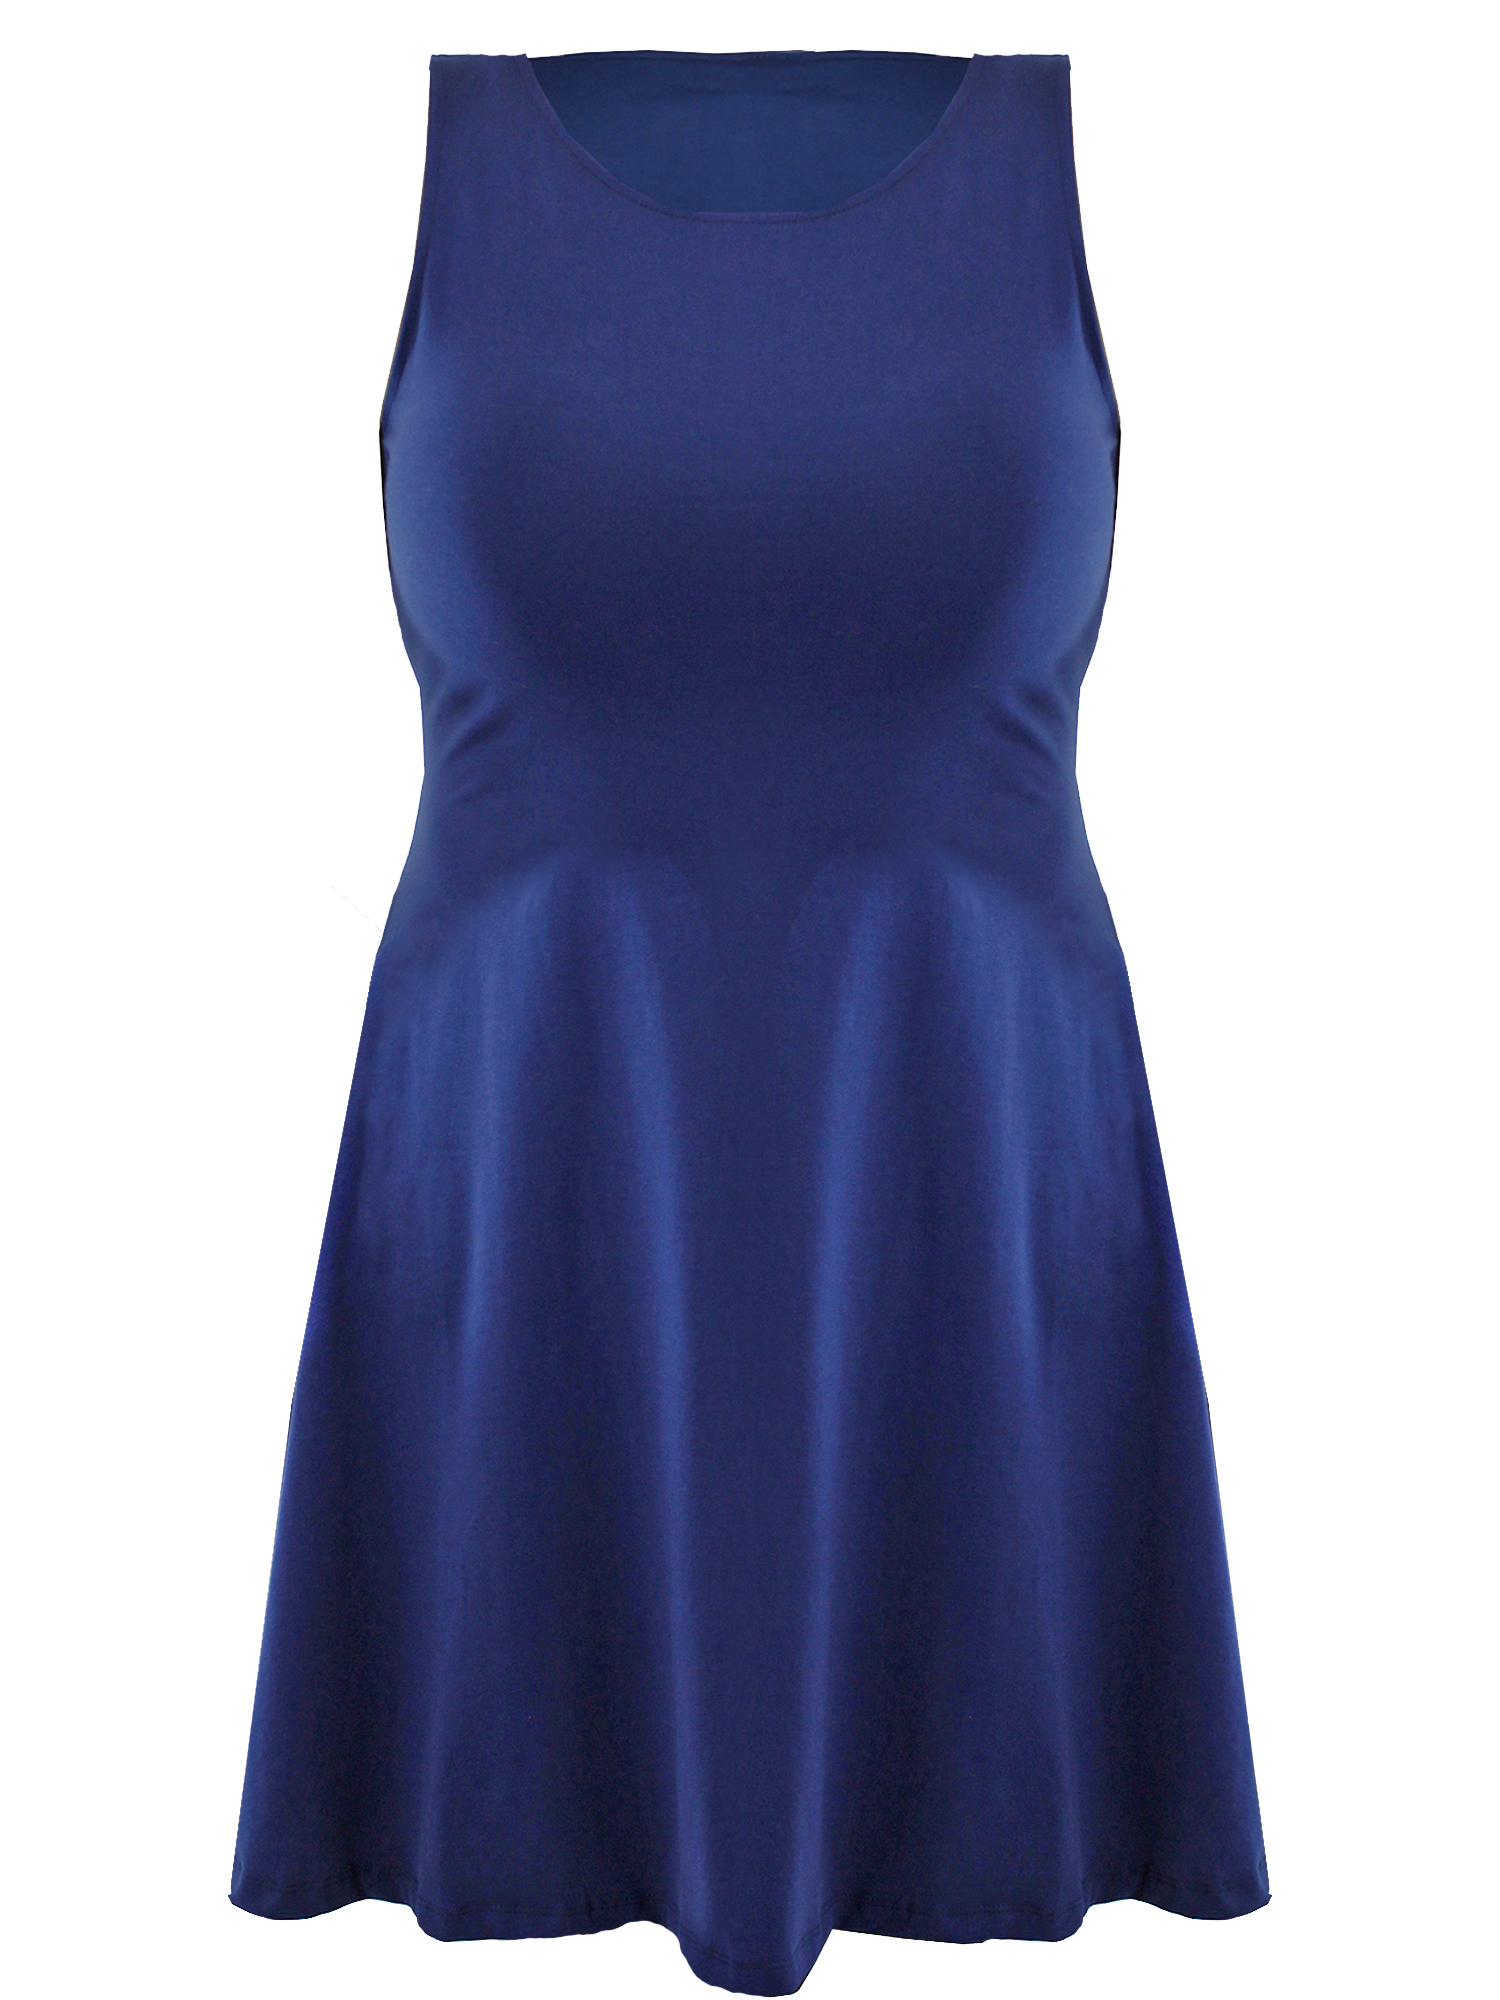 navy blue swing dress